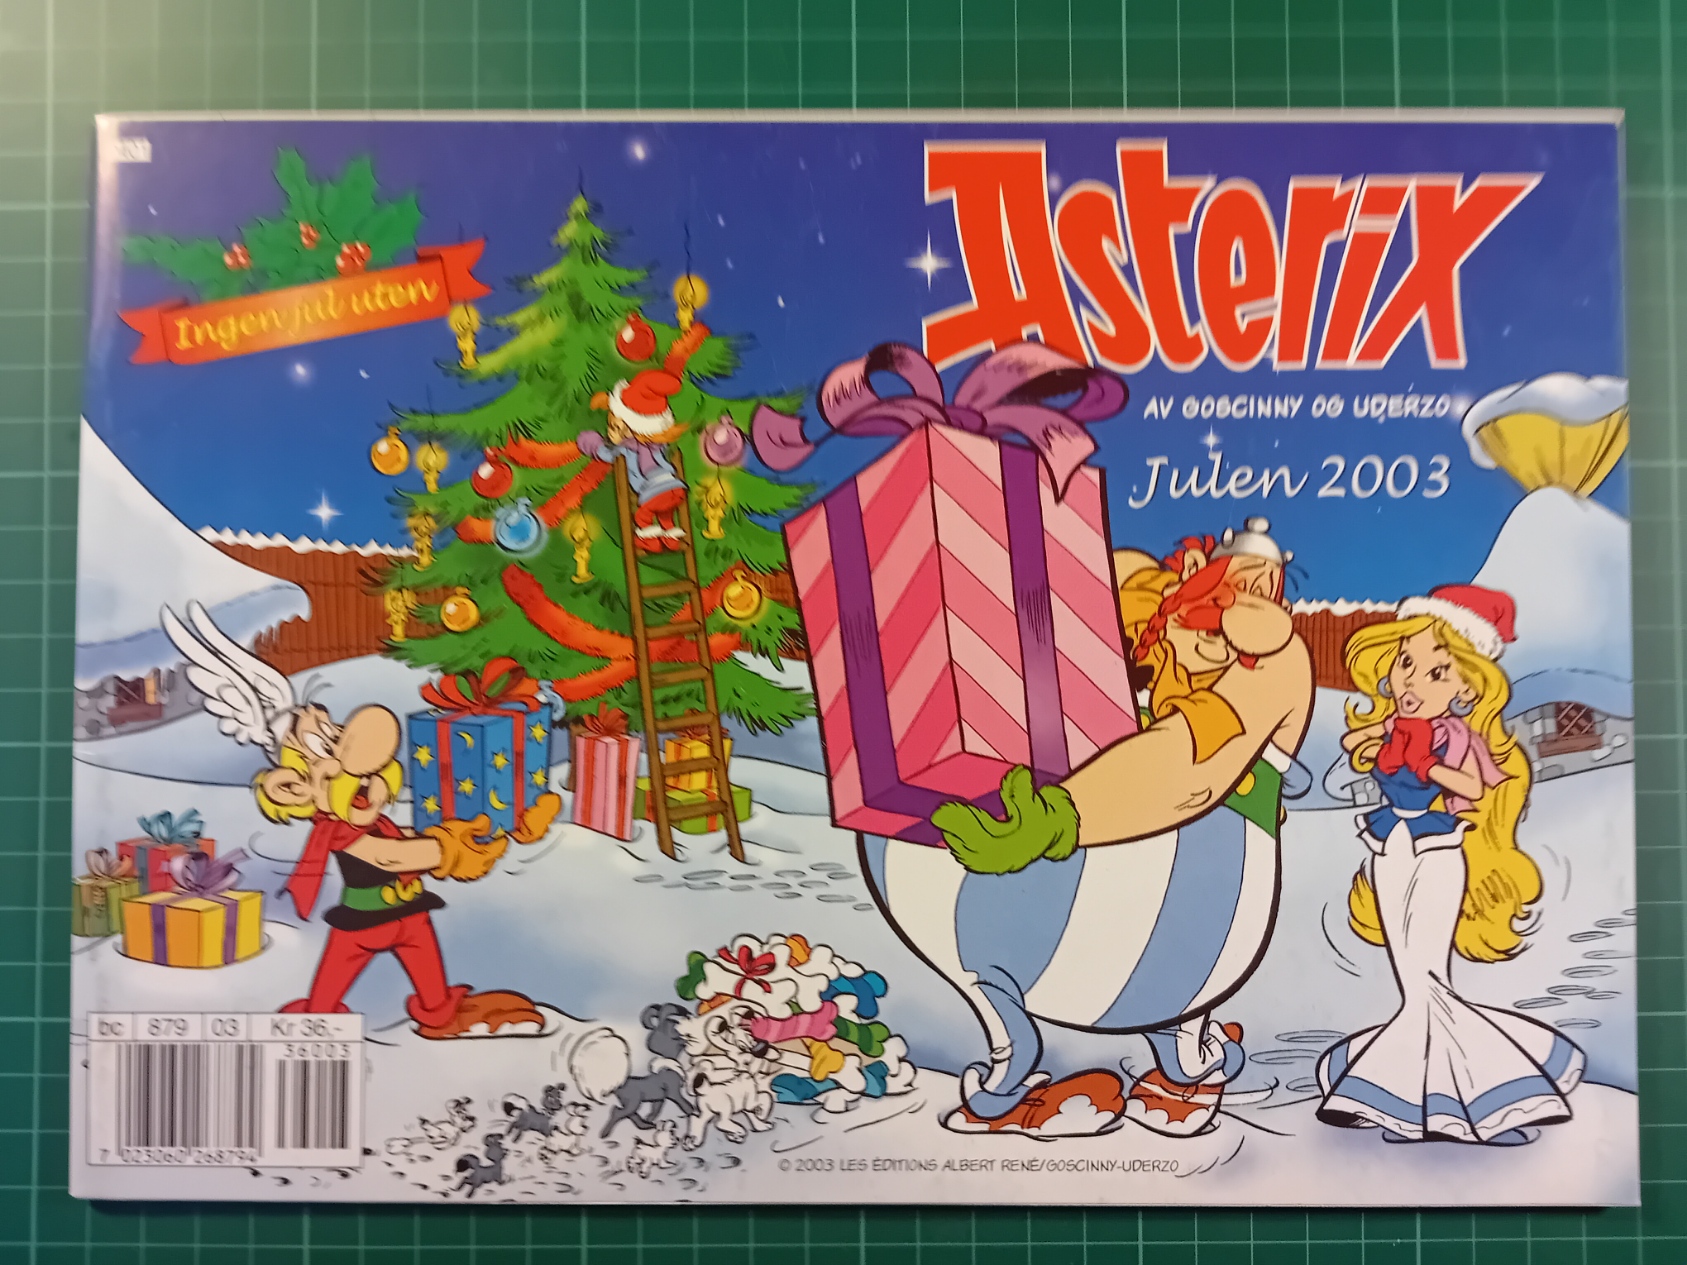 Asterix julen 2003